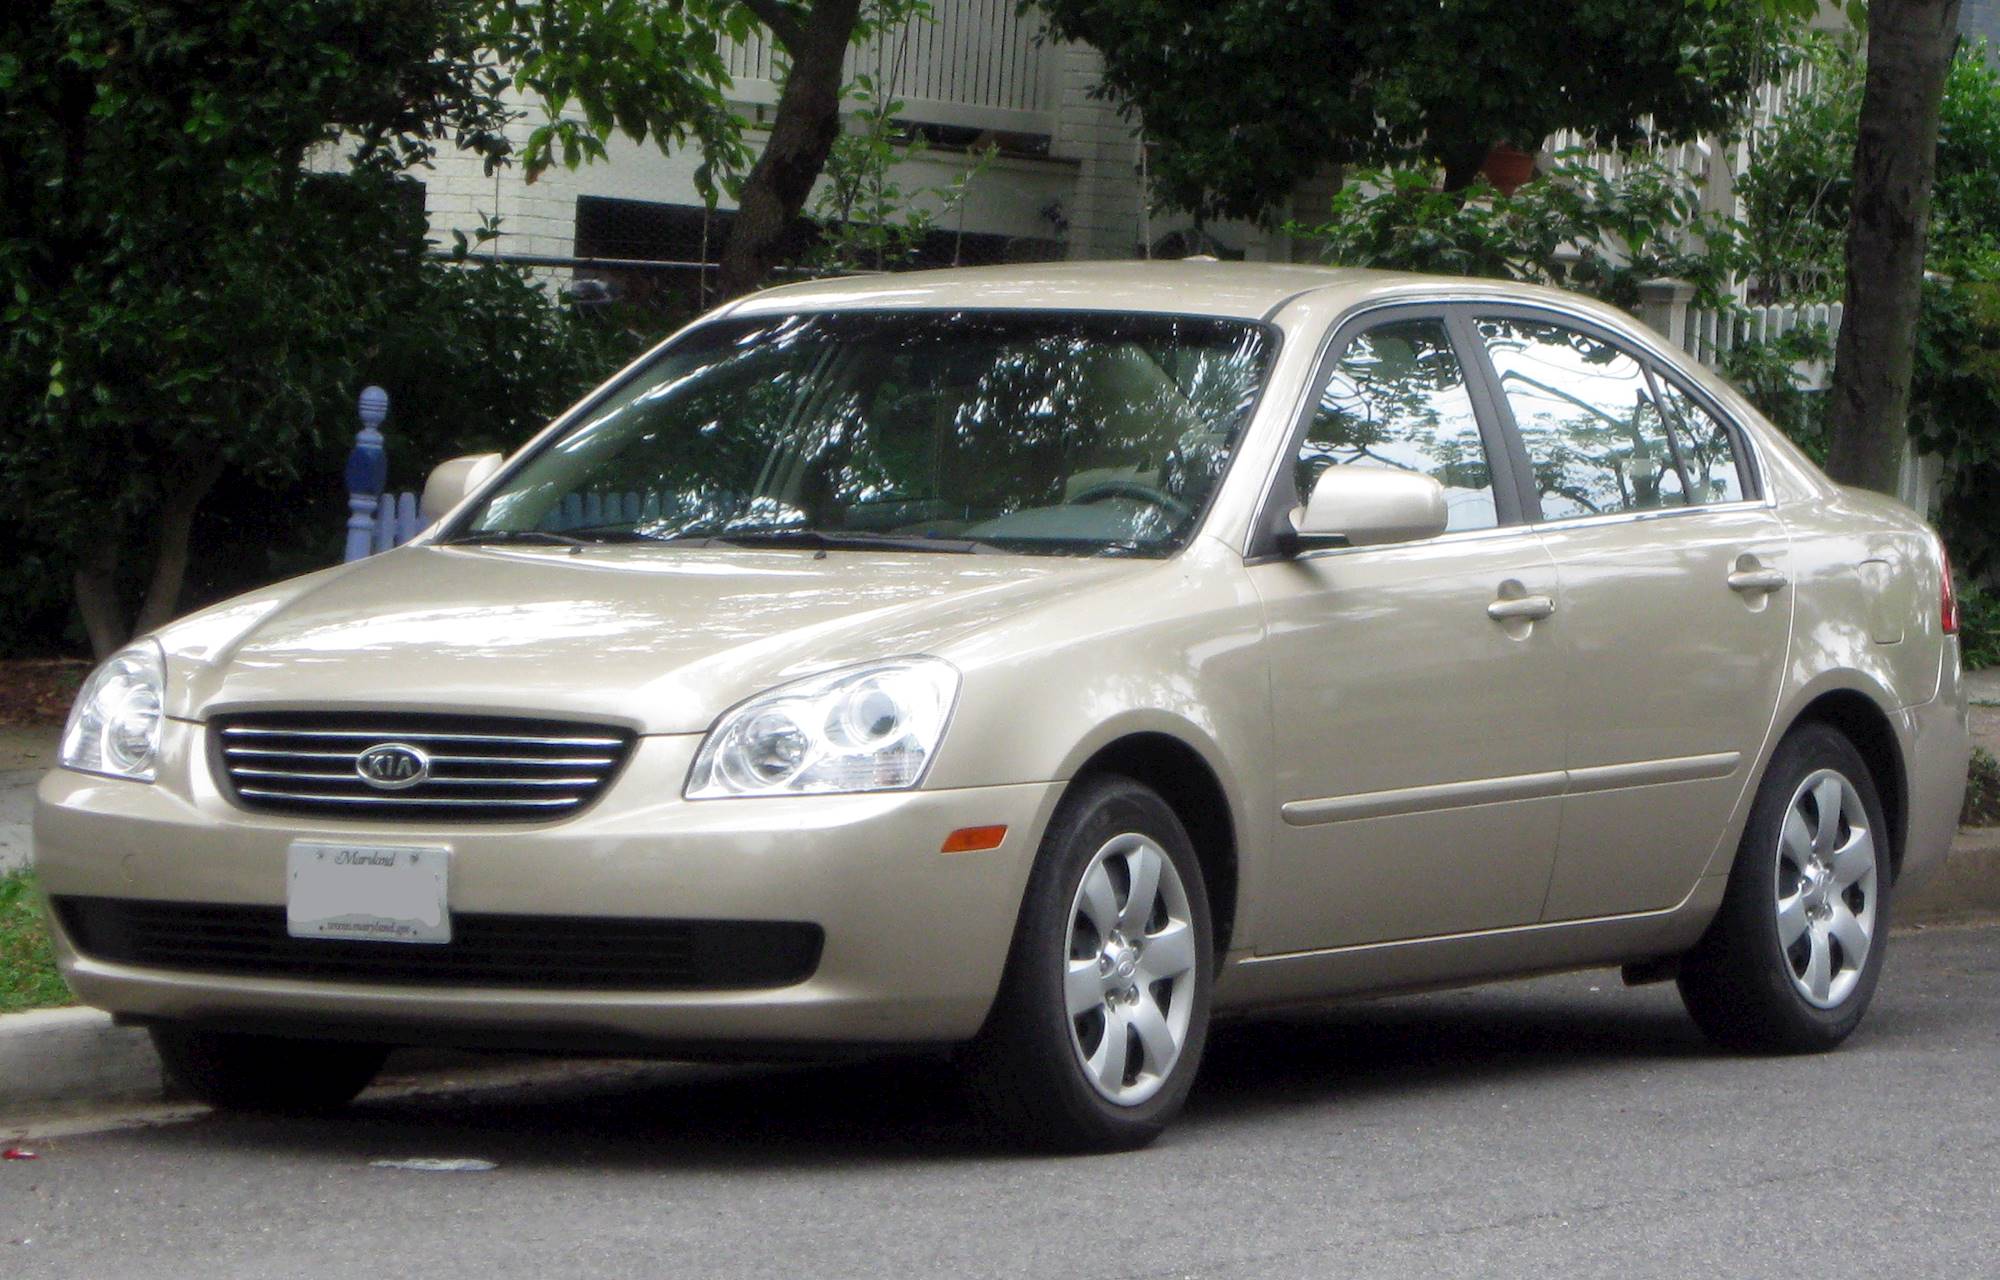 2006 Kia Optima LX - Sedan 2.4L Manual